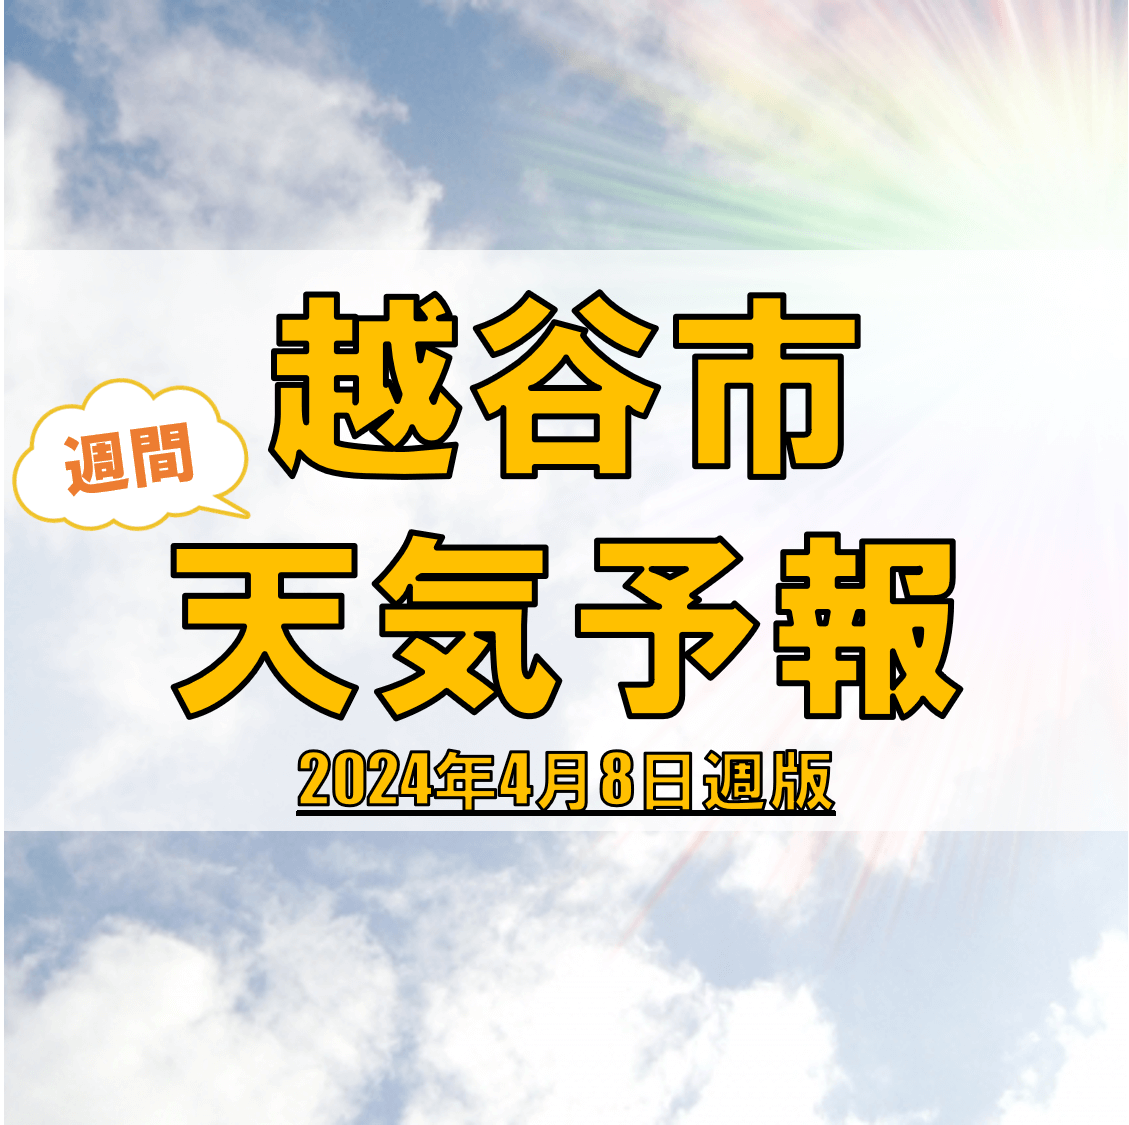 越谷市の天気 週間予報【2024年4月8日週】